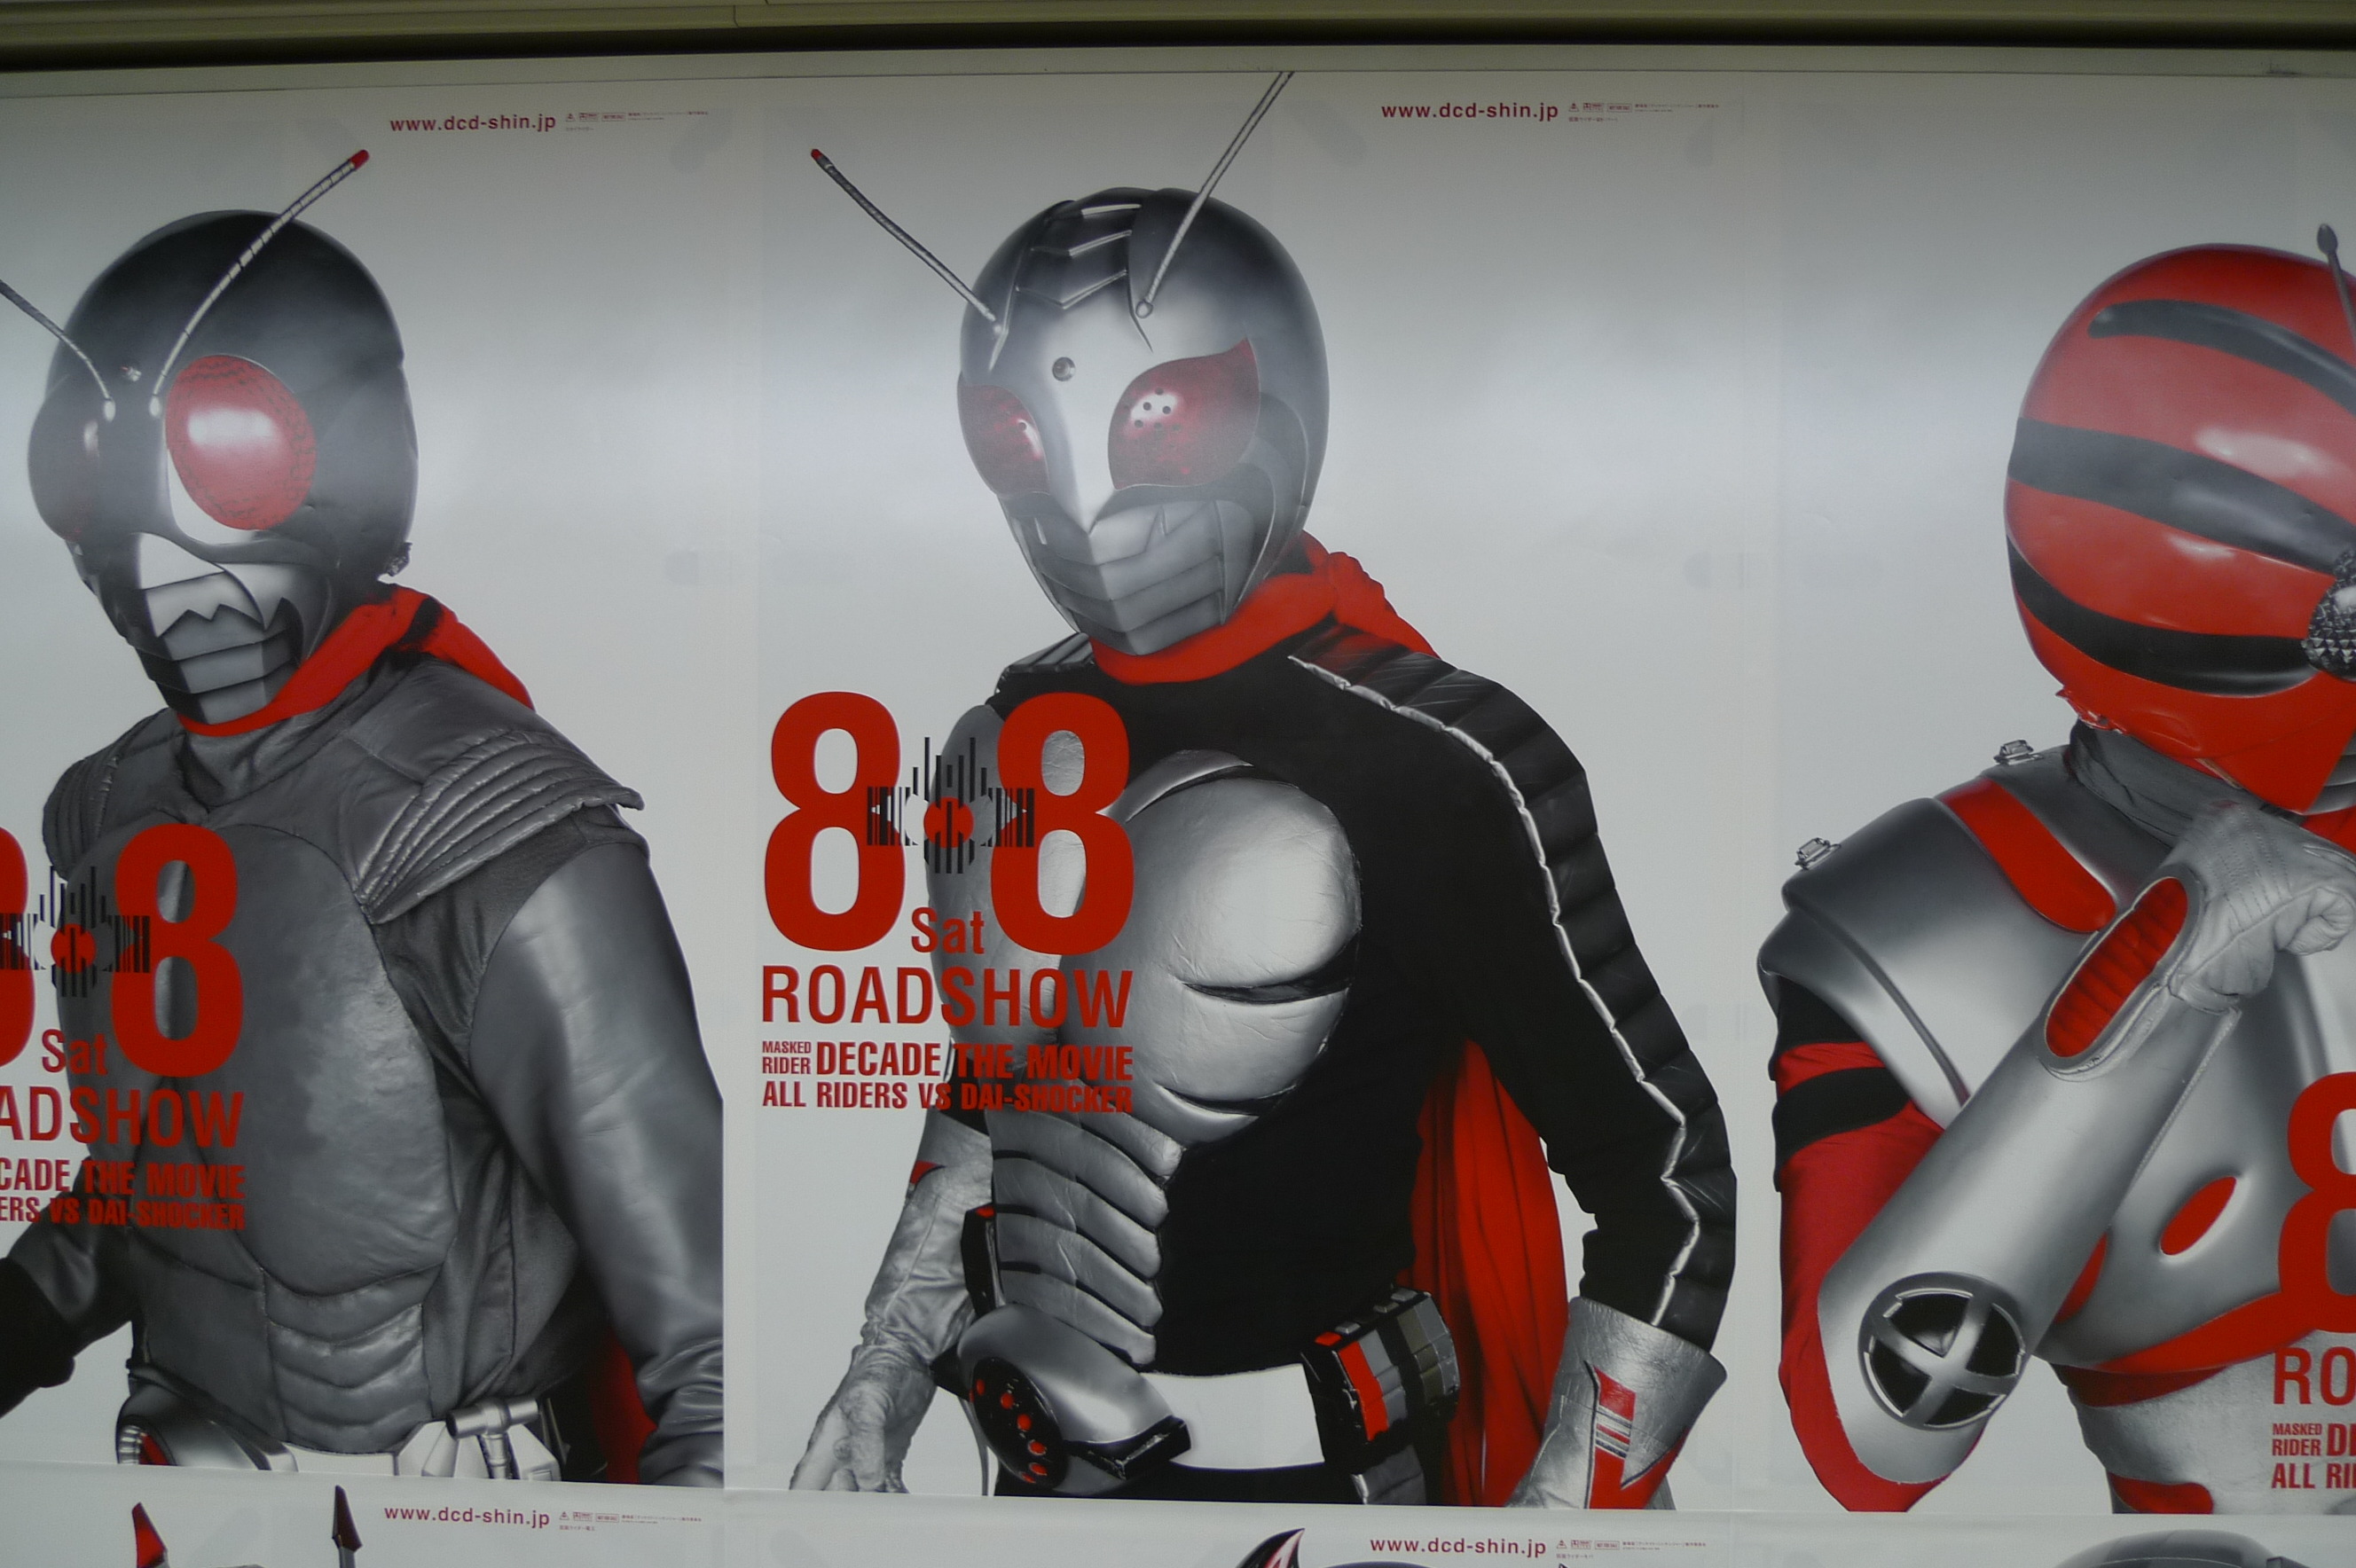 新宿駅地下道にある仮面ライダーの広告が素晴らしすぎる件について